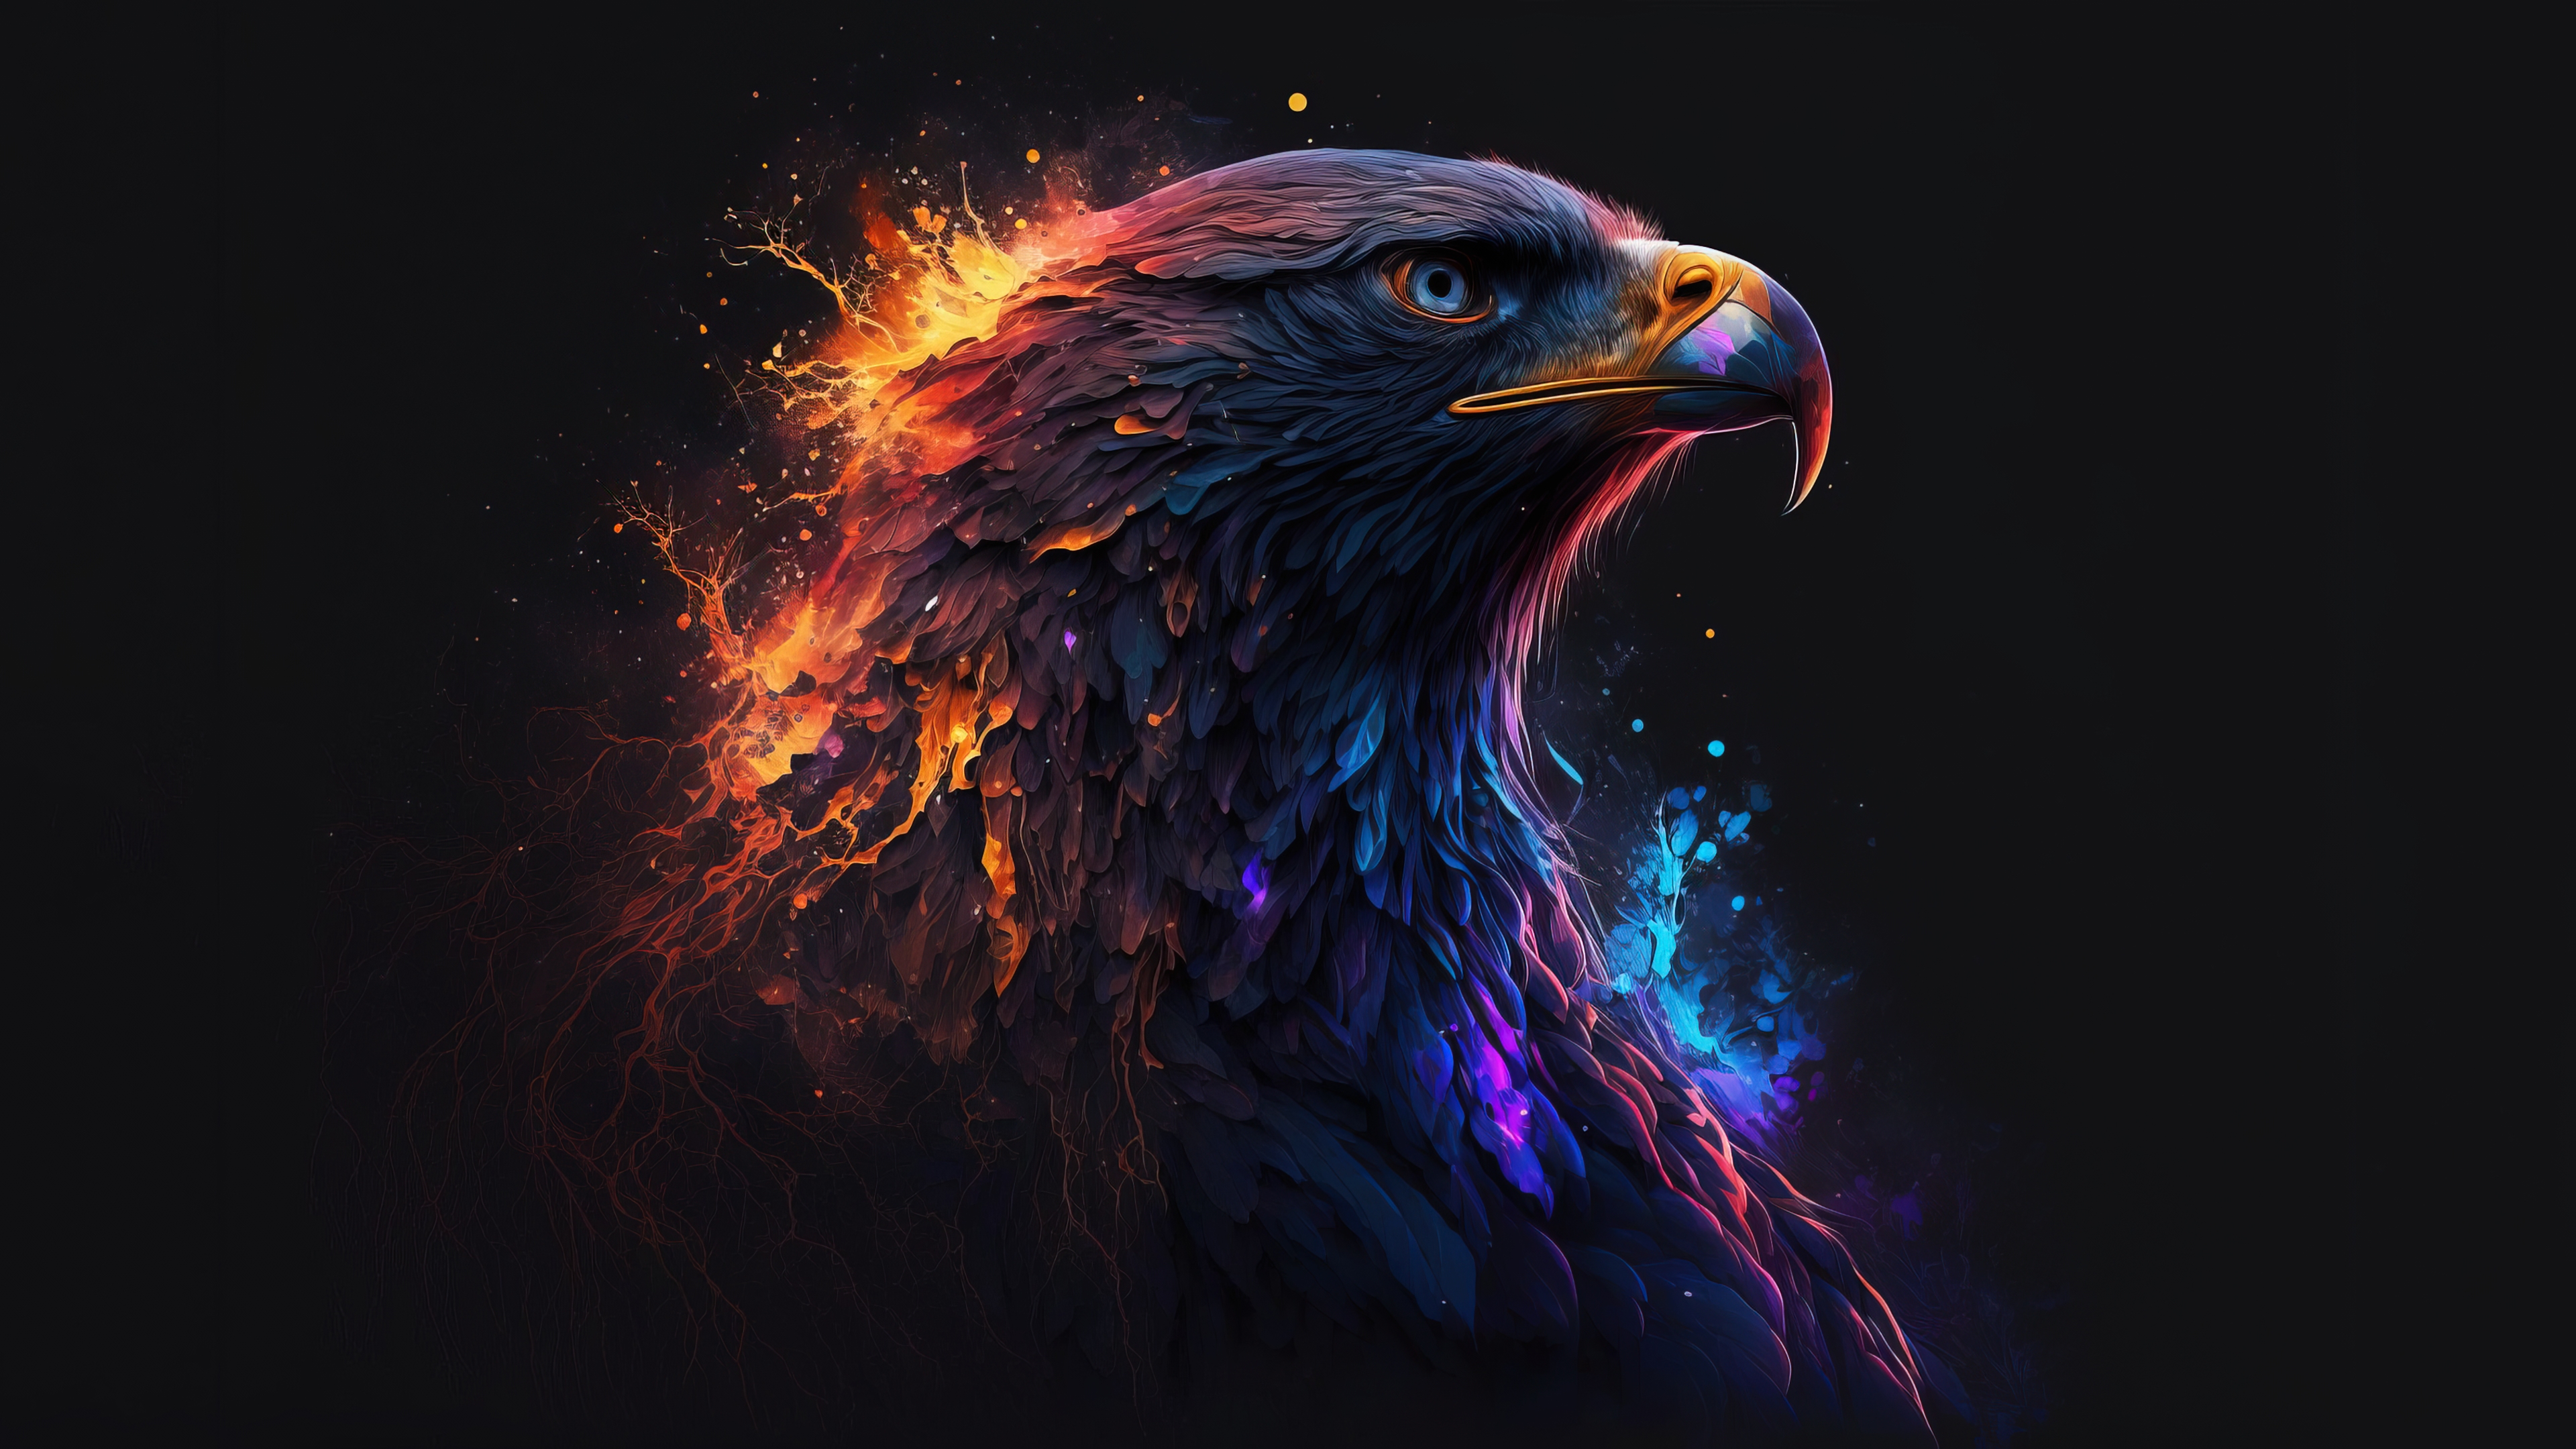 Бесплатное фото Красивый огненный орел на черном фоне